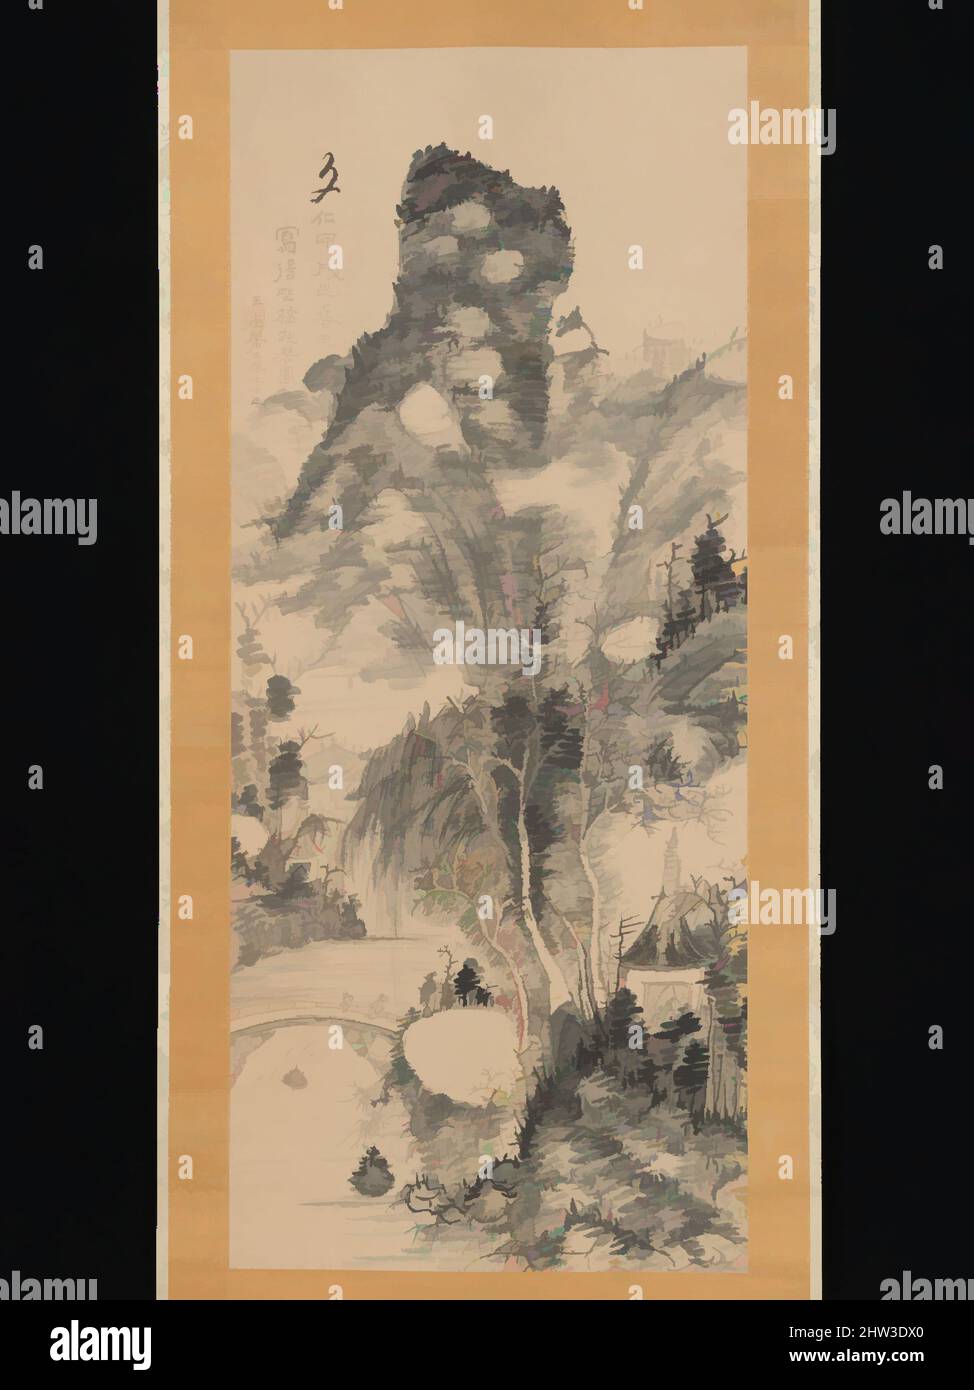 Art inspiré par 浦上玉堂筆 「野橋抱琴図」, sur un pont rustique, portant une zither (Yakyō hōkin zu), période Edo (1615–1868), 1814, Japon, rouleau suspendu; Encre sur papier, image : 50 1/4 × 21 5/16 po. (127,7 × 54,2 cm), peintures, Uragami Gyokudō (japonais, 1745–1820), homme âgé avec un serviteur, oeuvres classiques modernisées par Artotop avec une touche de modernité. Formes, couleur et valeur, impact visuel accrocheur sur l'art émotions par la liberté d'œuvres d'art d'une manière contemporaine. Un message intemporel qui cherche une nouvelle direction créative. Artistes qui se tournent vers le support numérique et créent le NFT Artotop Banque D'Images